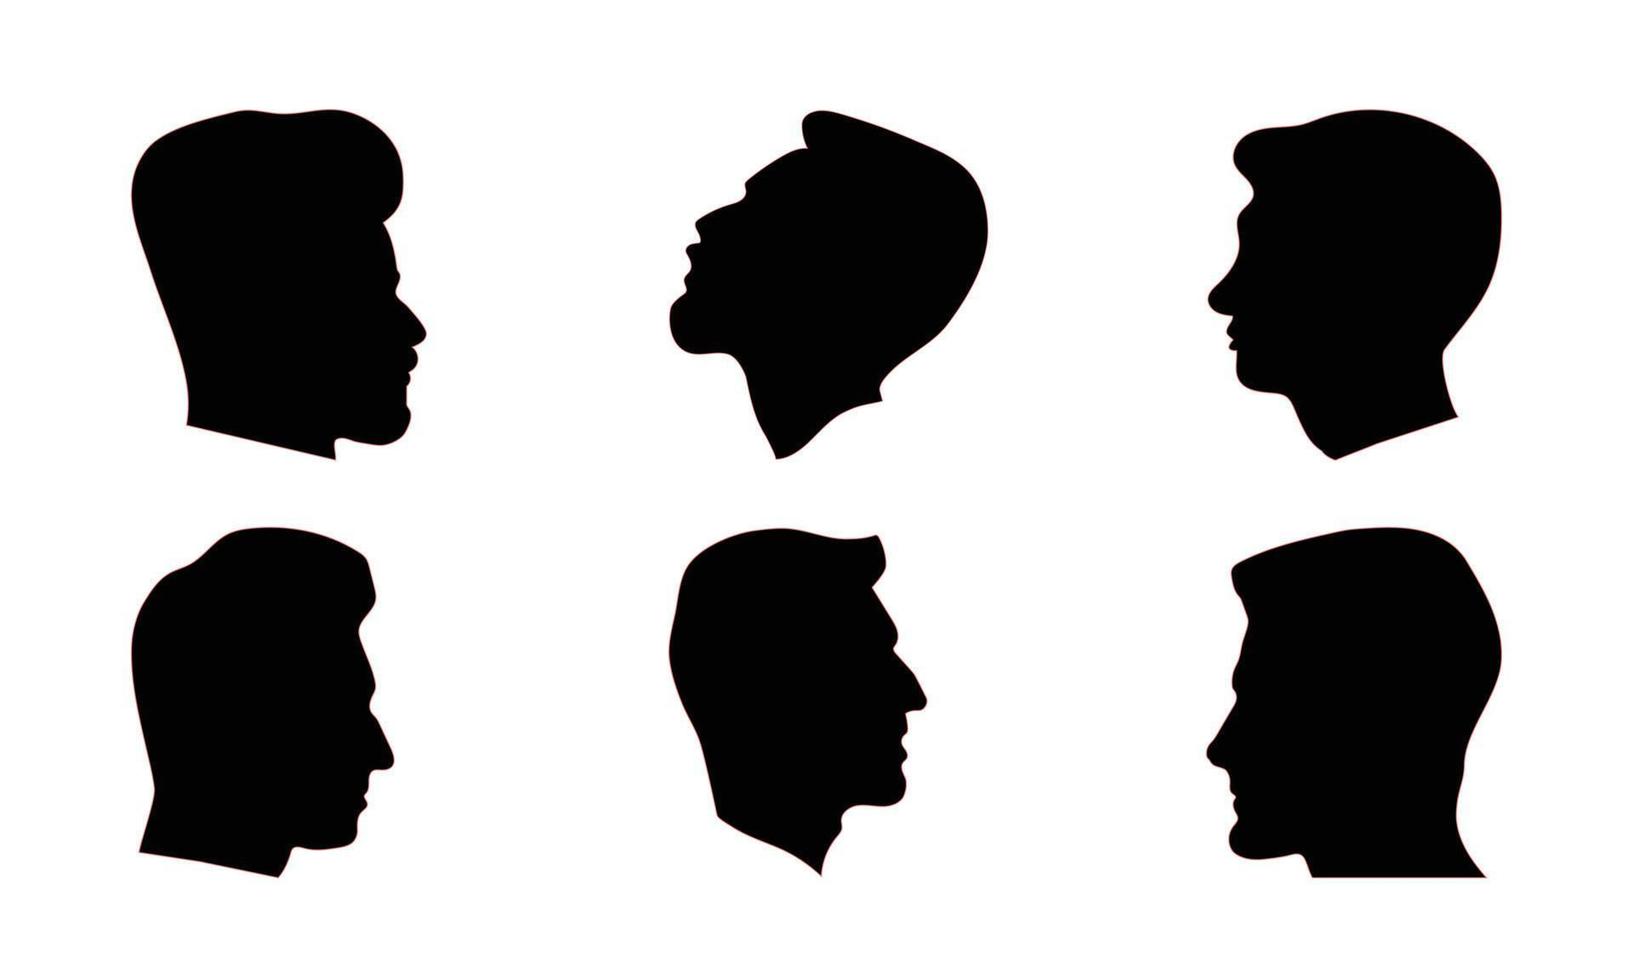 silueta hombre cabezas en perfil. negro cara contorno avatares, profesional masculino perfiles anónimo retratos con peinado, vector conjunto